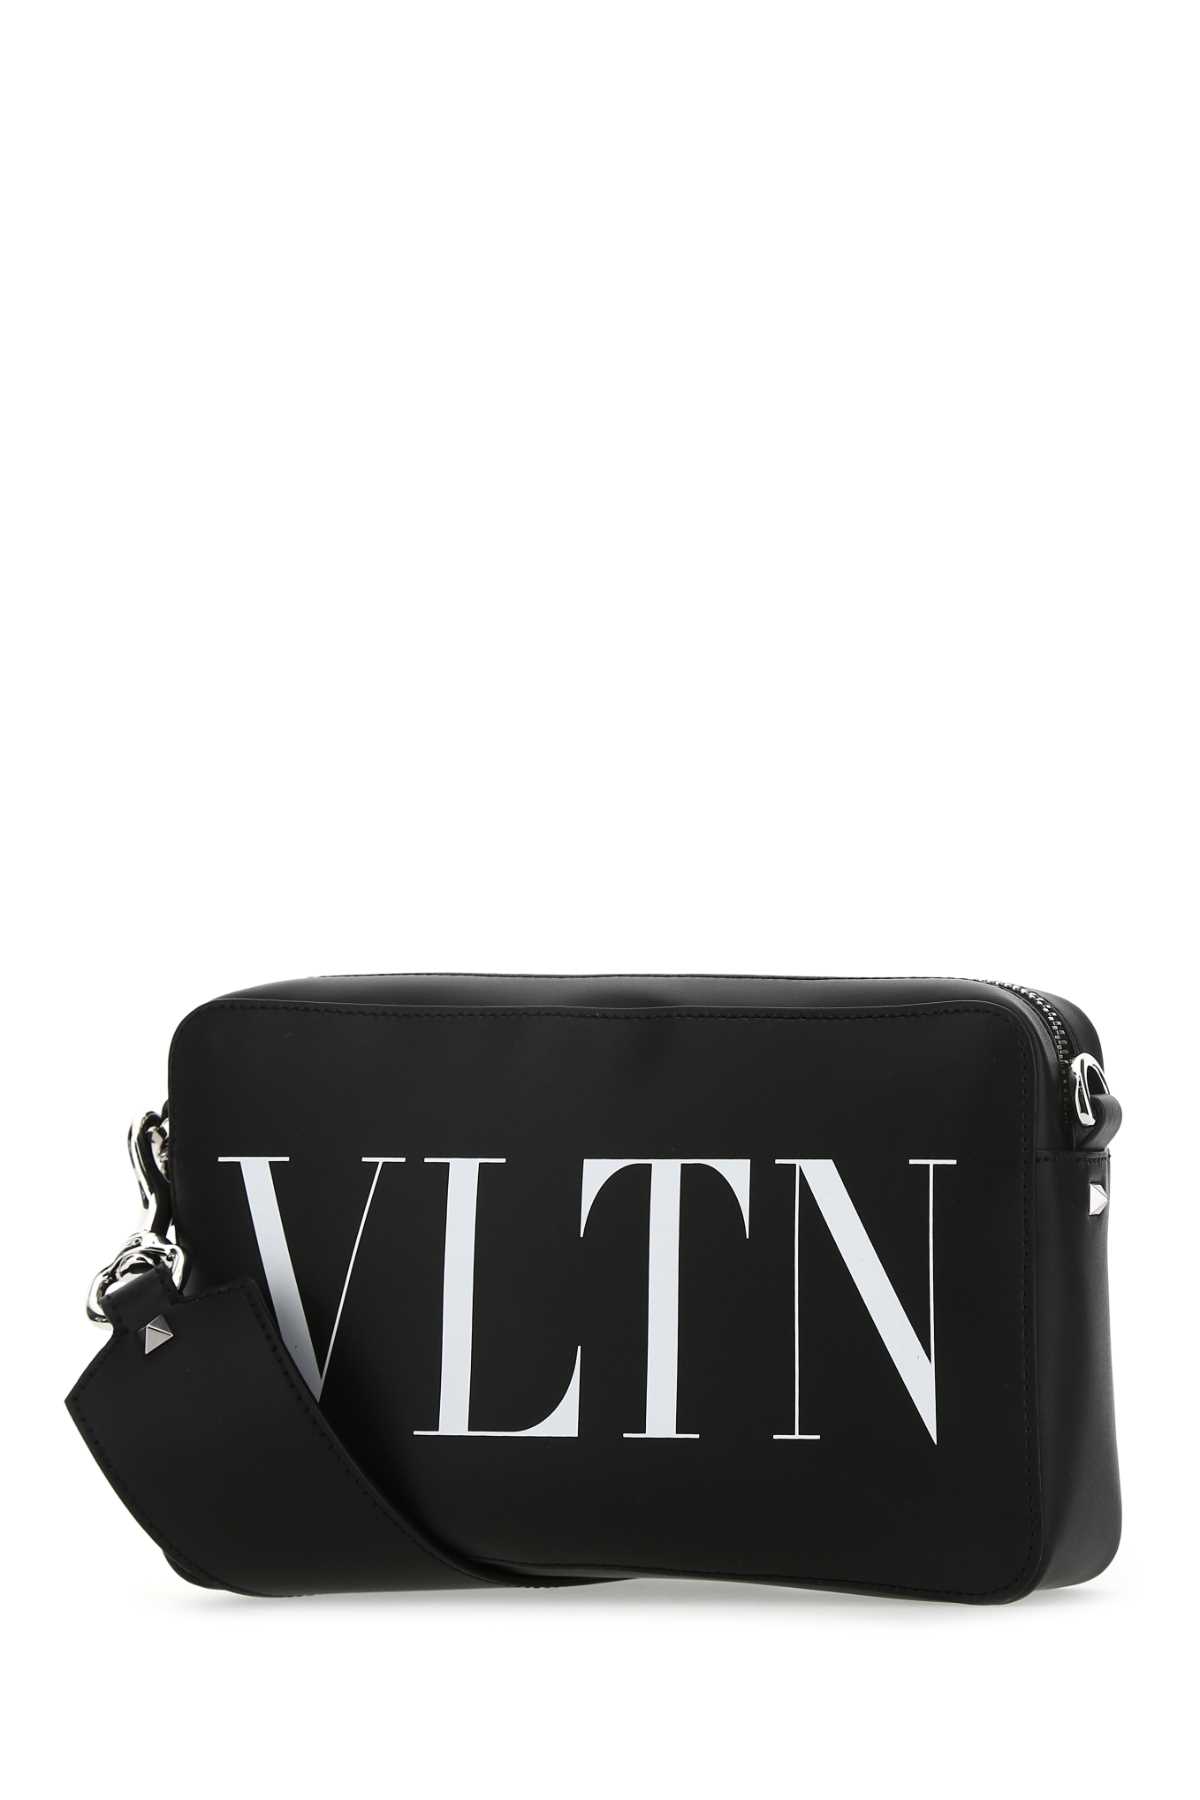 Valentino Garavani Black Leather Vltn Crossbody Bag In Nerobianco